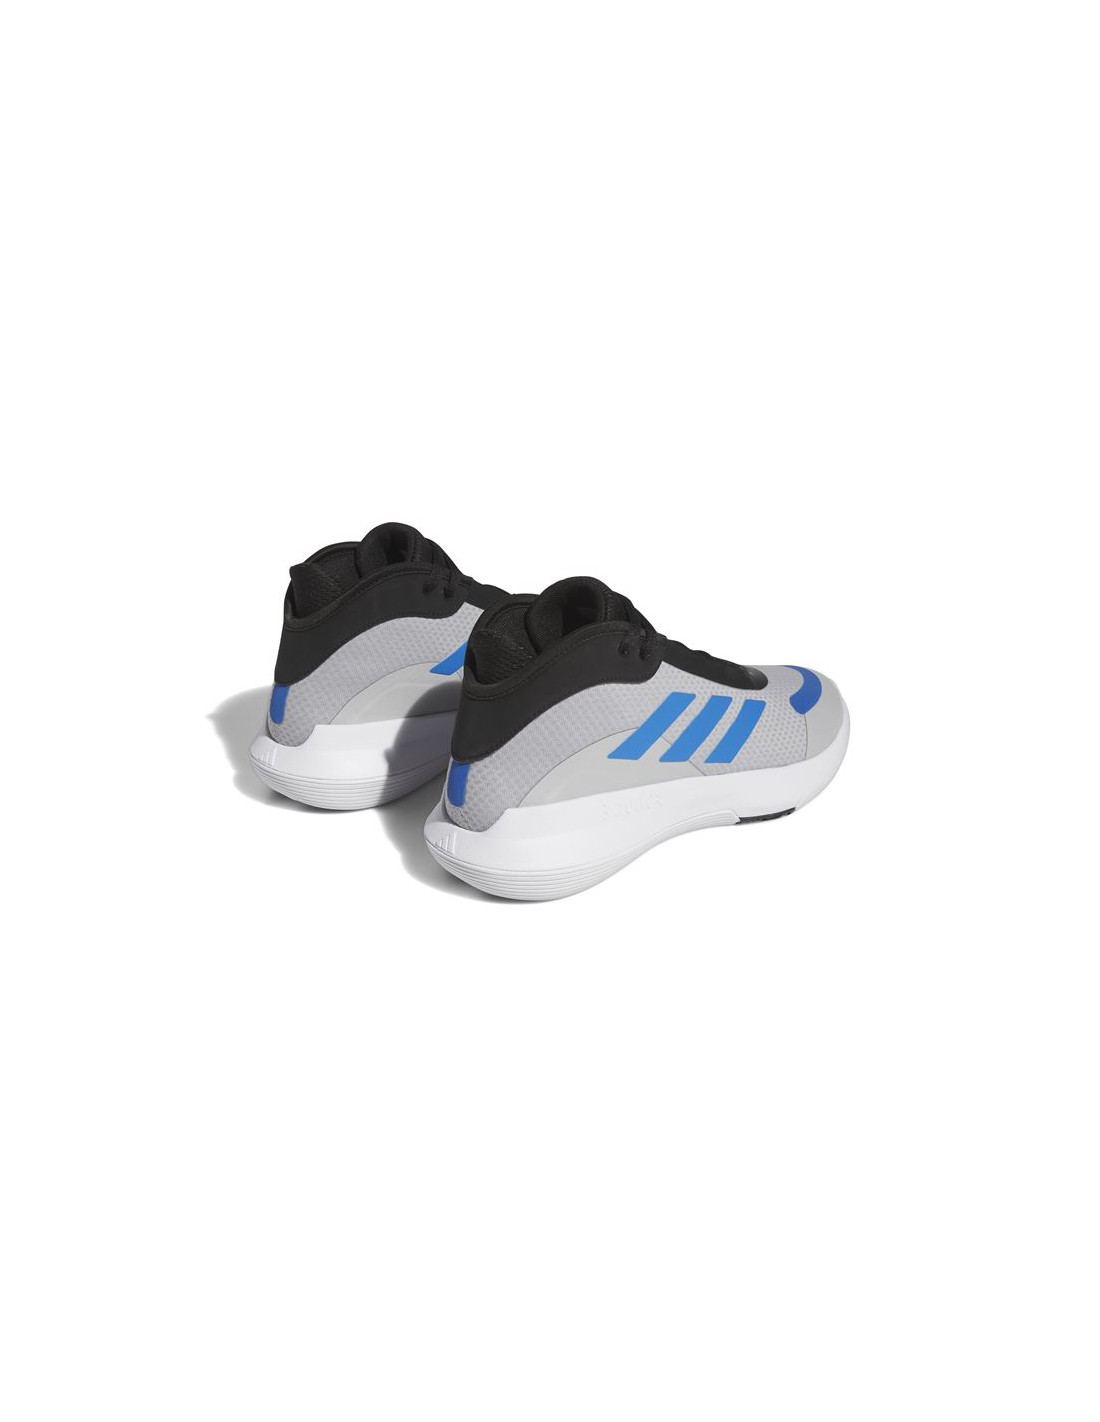 adidas Bounce Legends - Blanco - Zapatillas Baloncesto Hombre